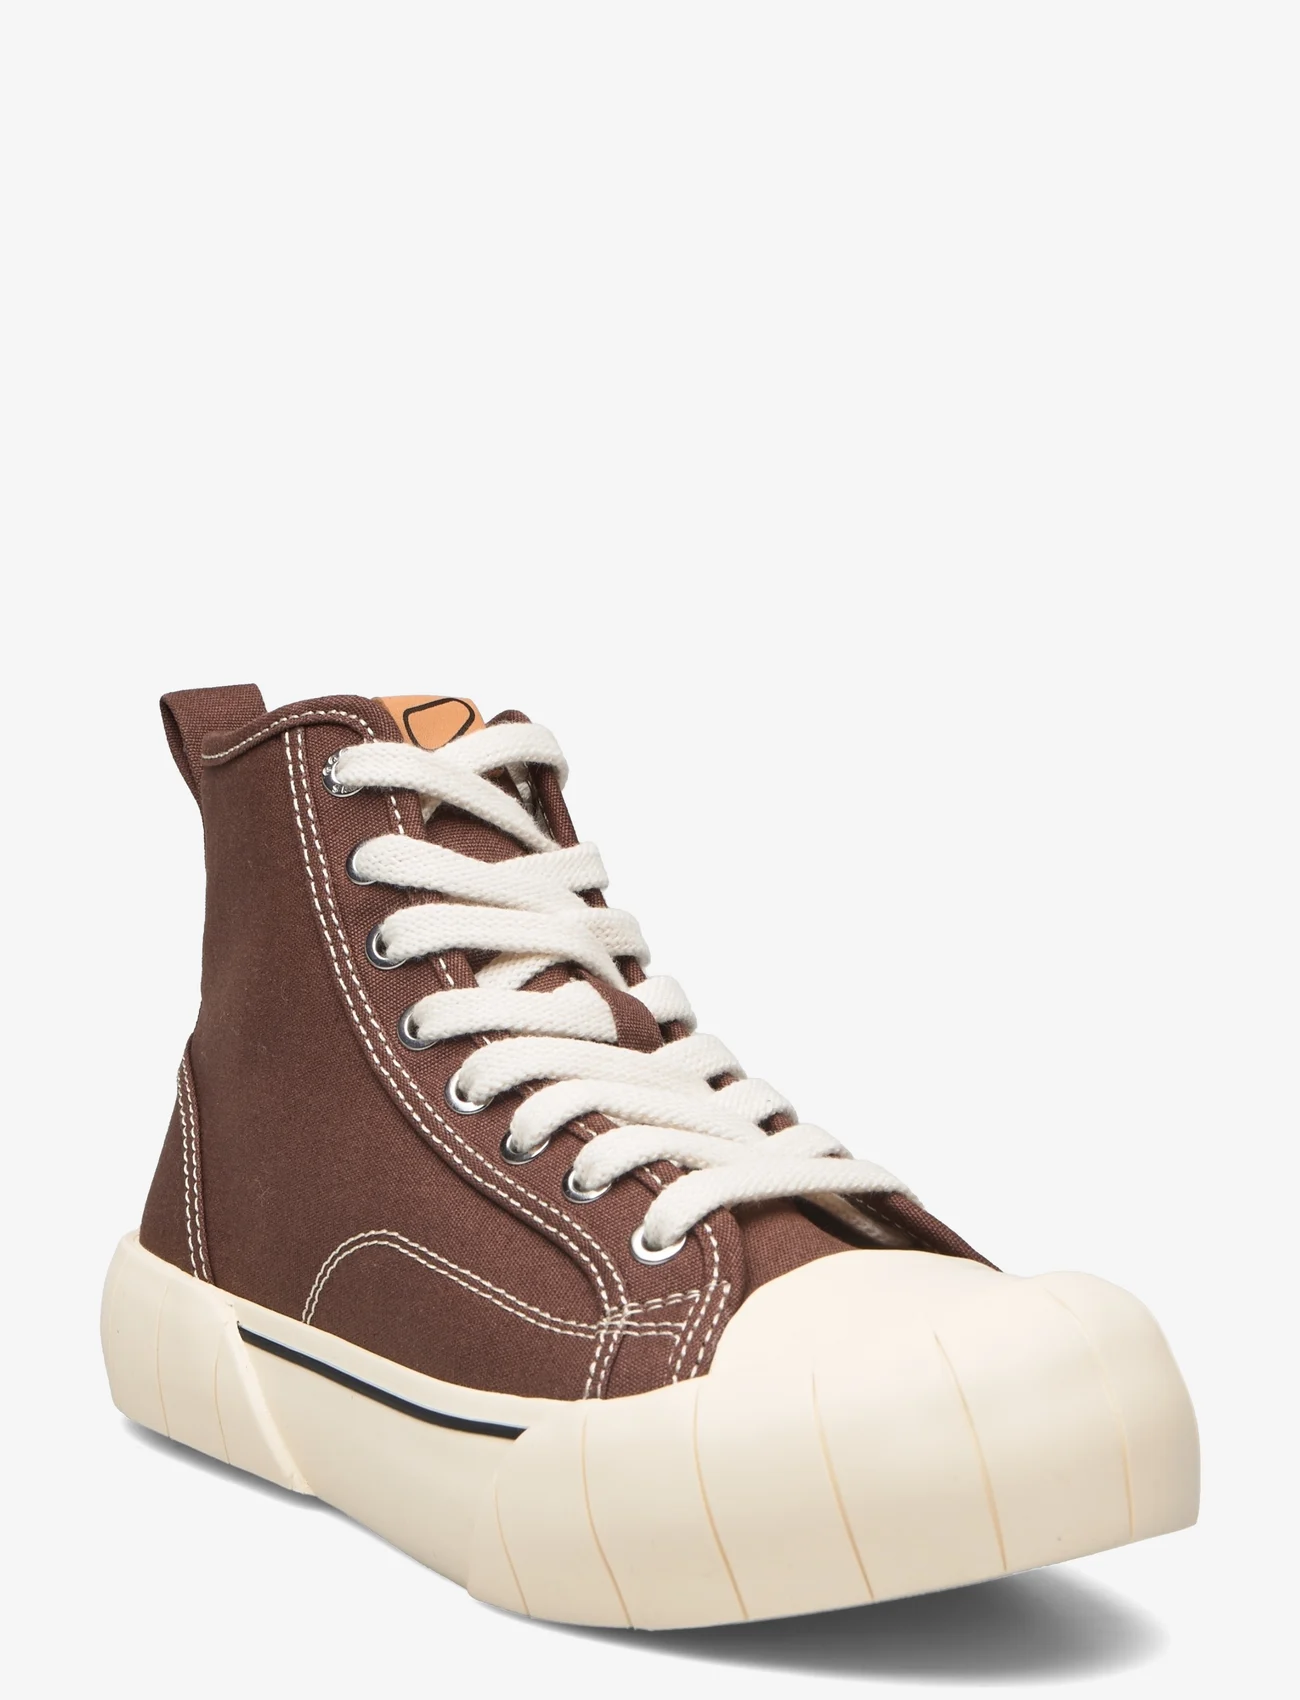 Good News - BAGEL - high top sneakers - brown - 0